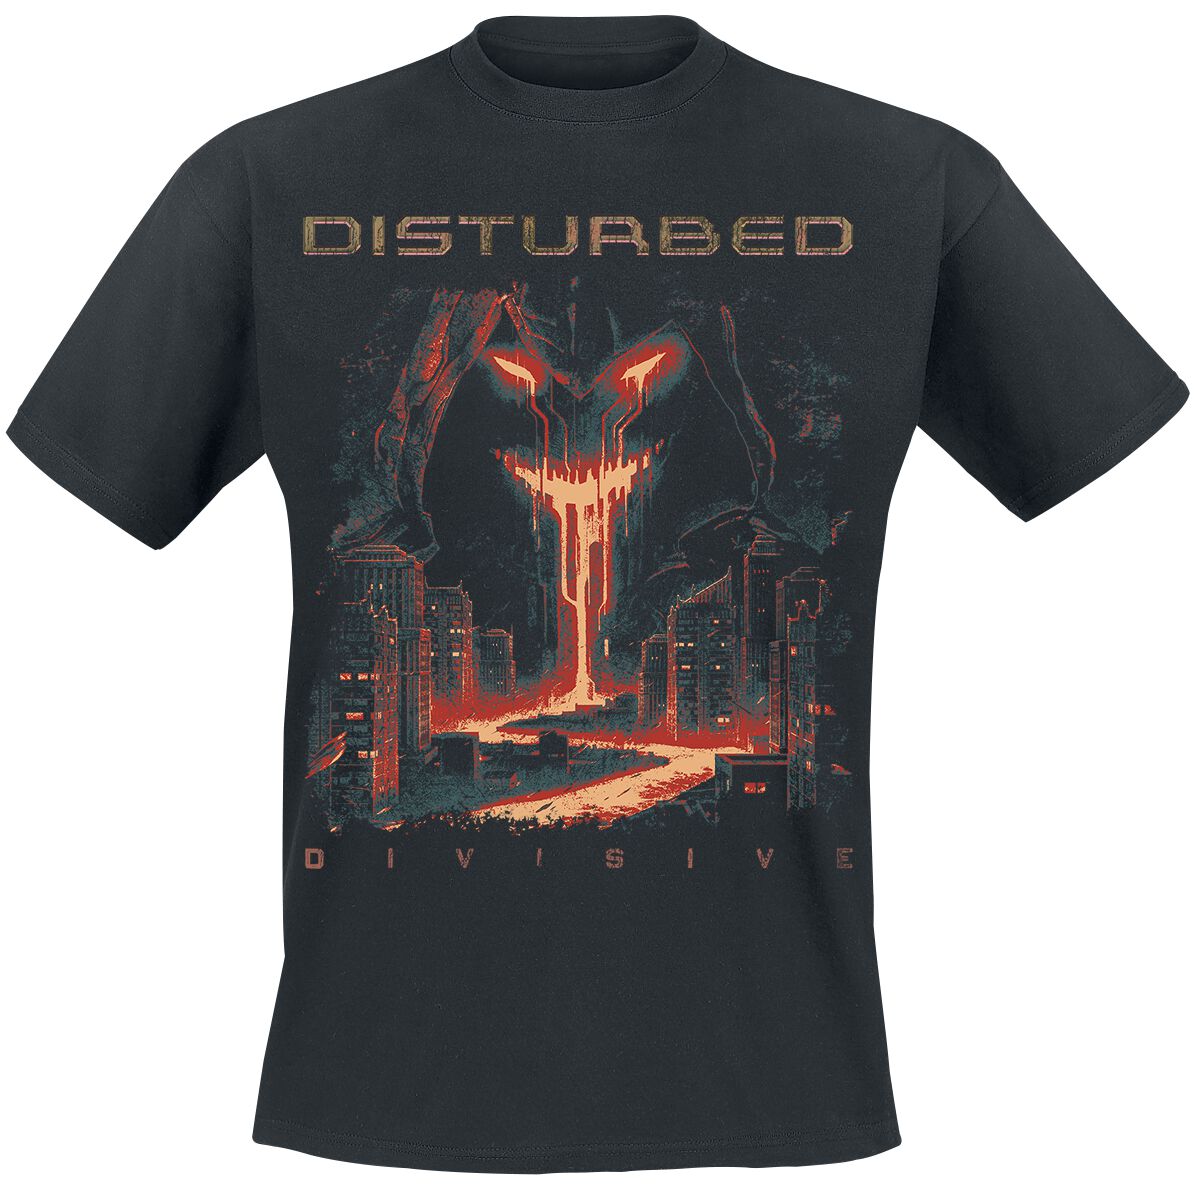 Disturbed T-Shirt - Divisive - S bis 3XL - für Männer - Größe XL - schwarz  - Lizenziertes Merchandise!